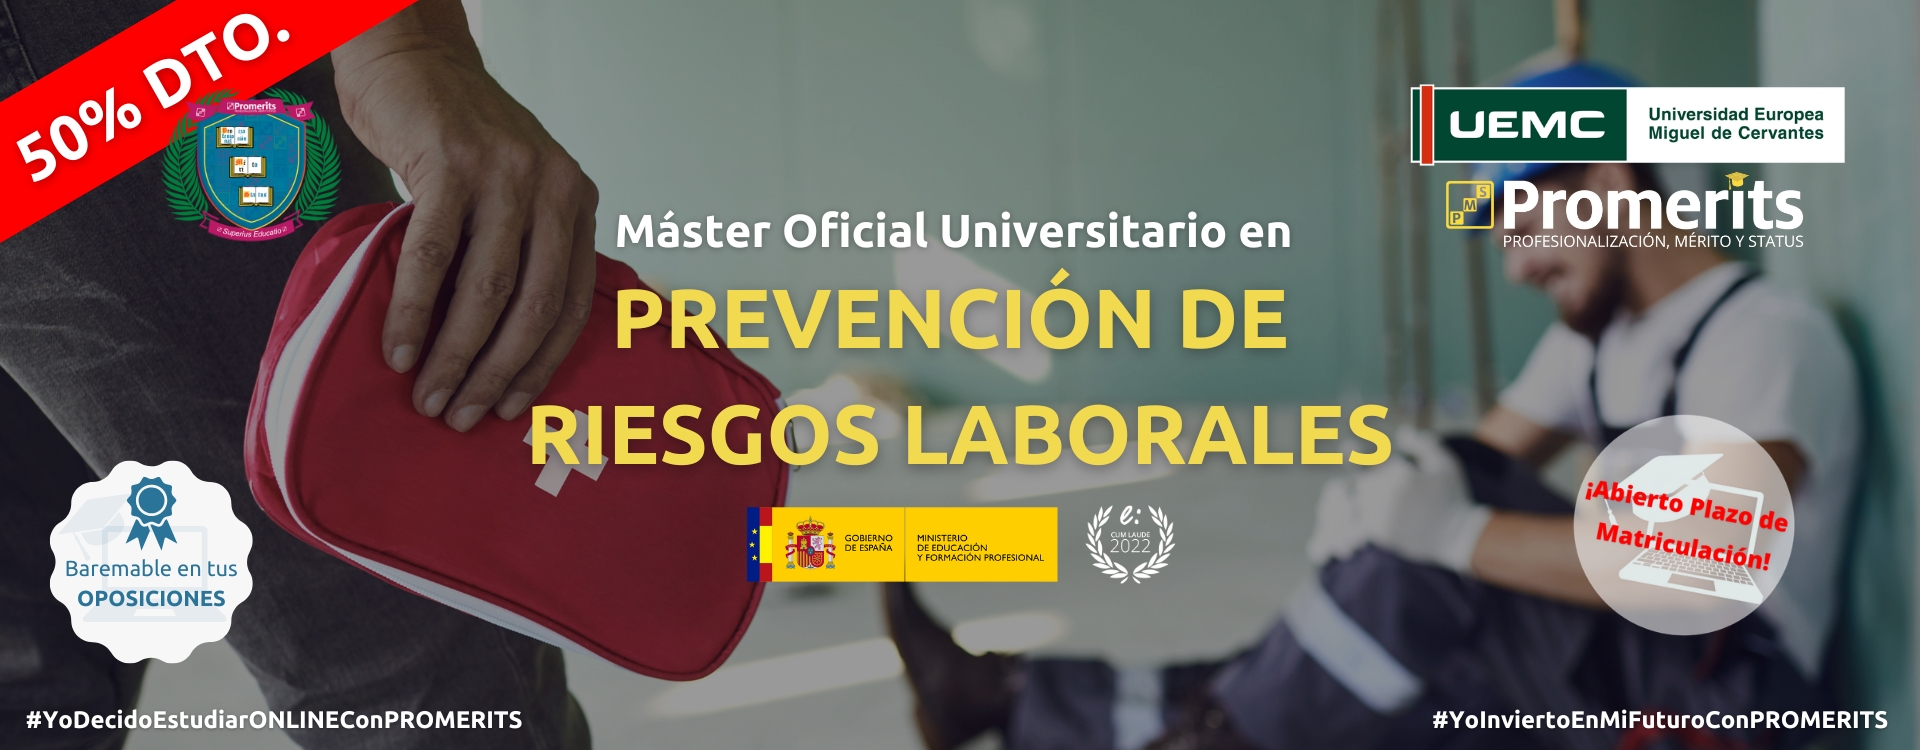 Máster Oficial Universitario en Prevención de Riesgos Laborales